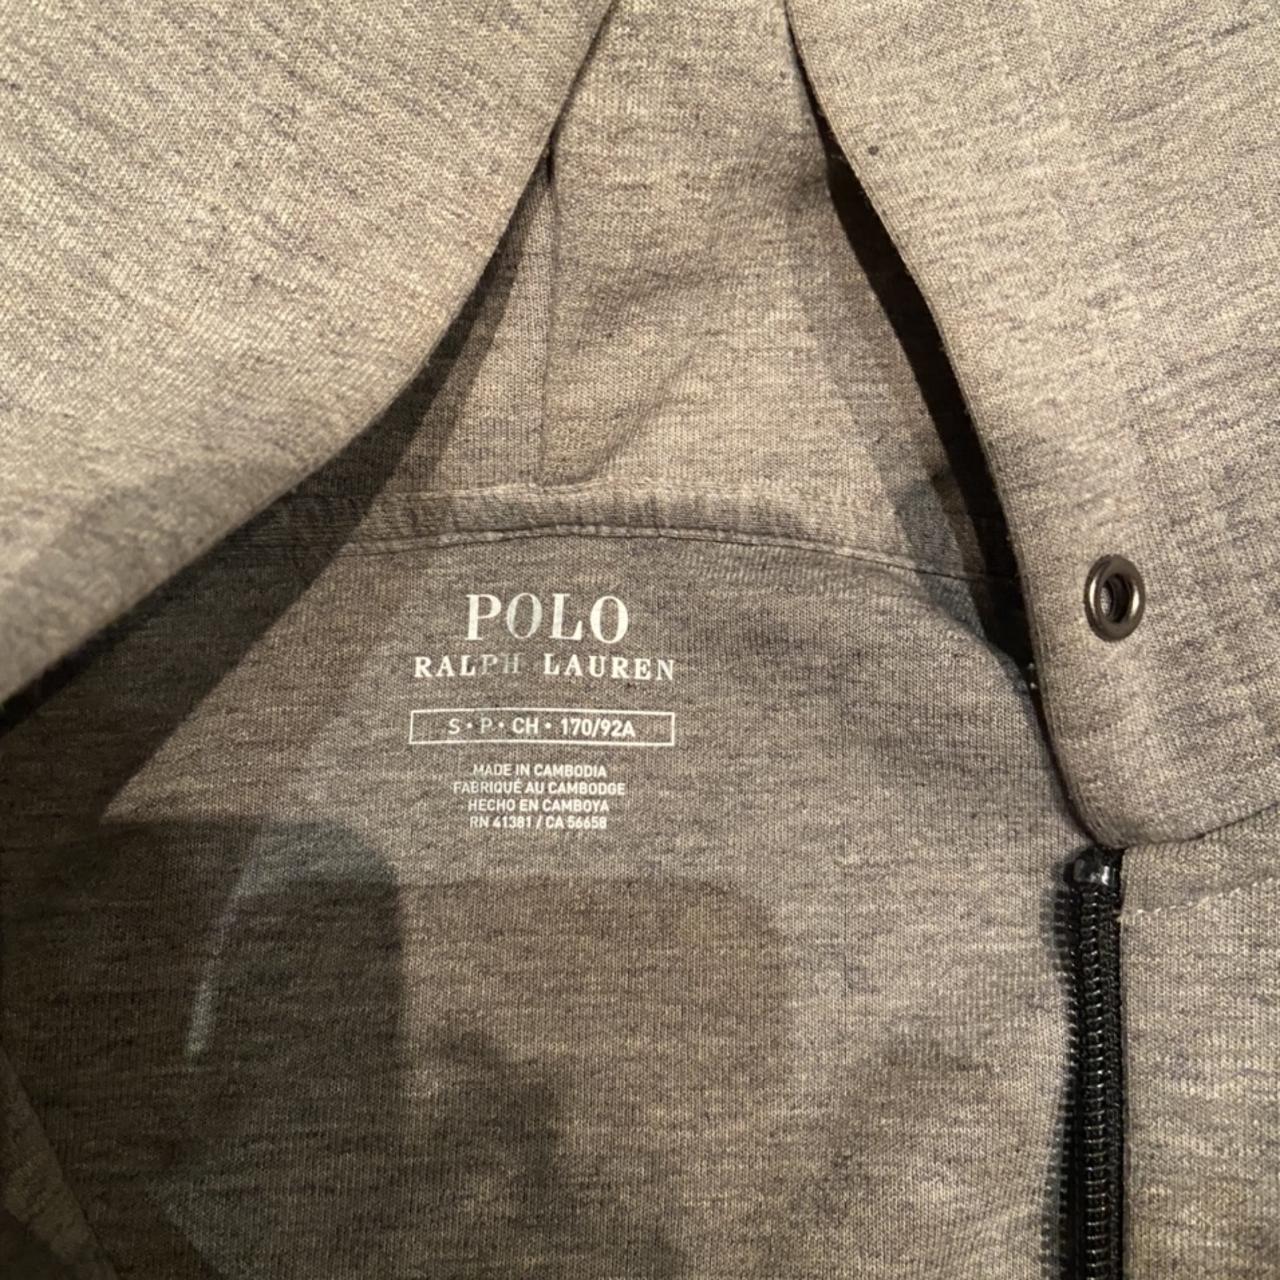 Polo Ralph Lauren Grey zip up hoody Small Prime... - Depop